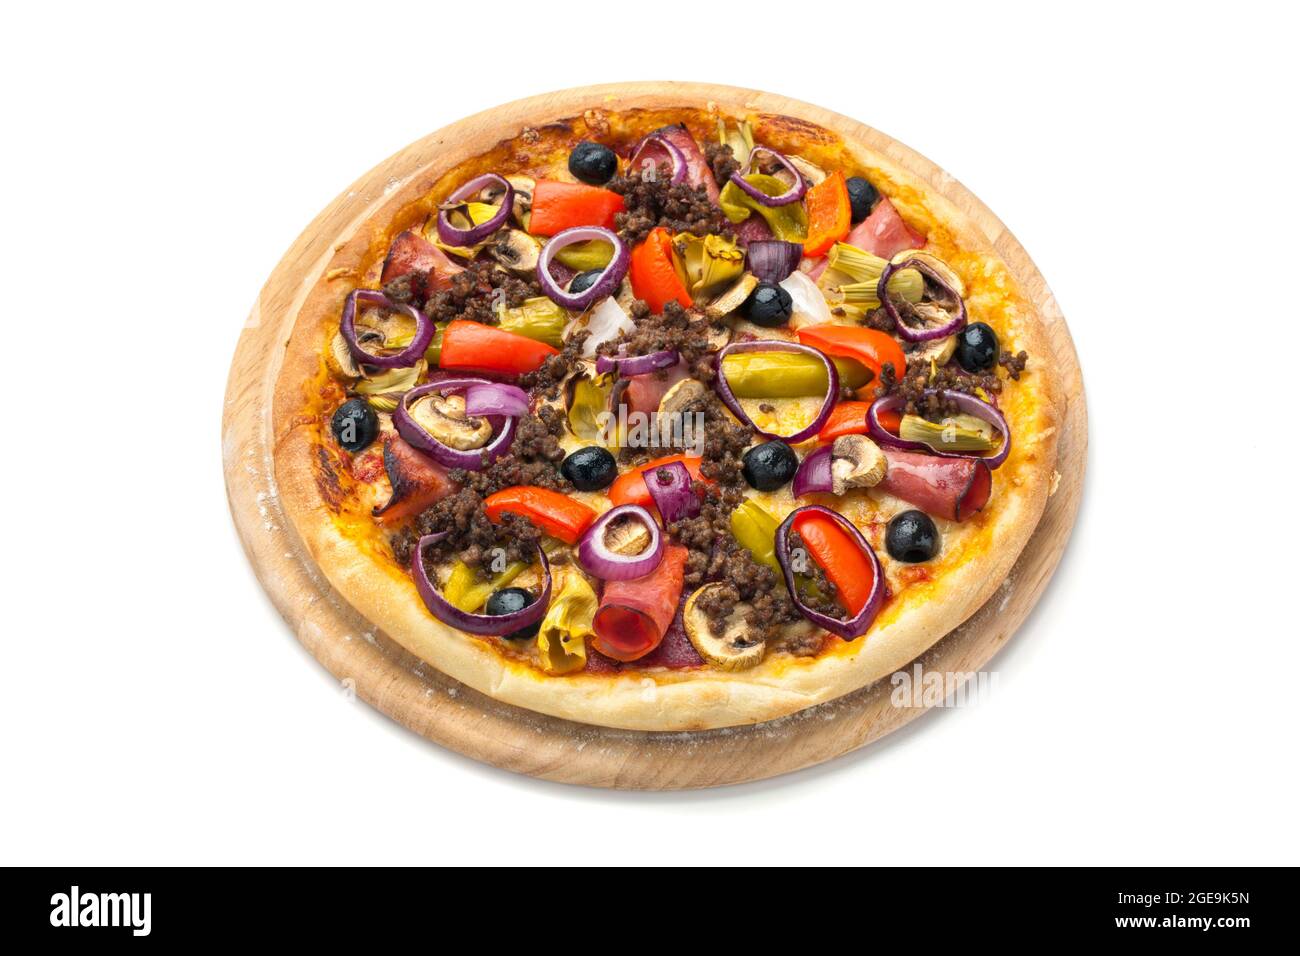 Pizza grecque avec viande hachée, champignons, poivrons, jambon, oignons rouges et olives isolées sur fond blanc, vue panoramique Banque D'Images